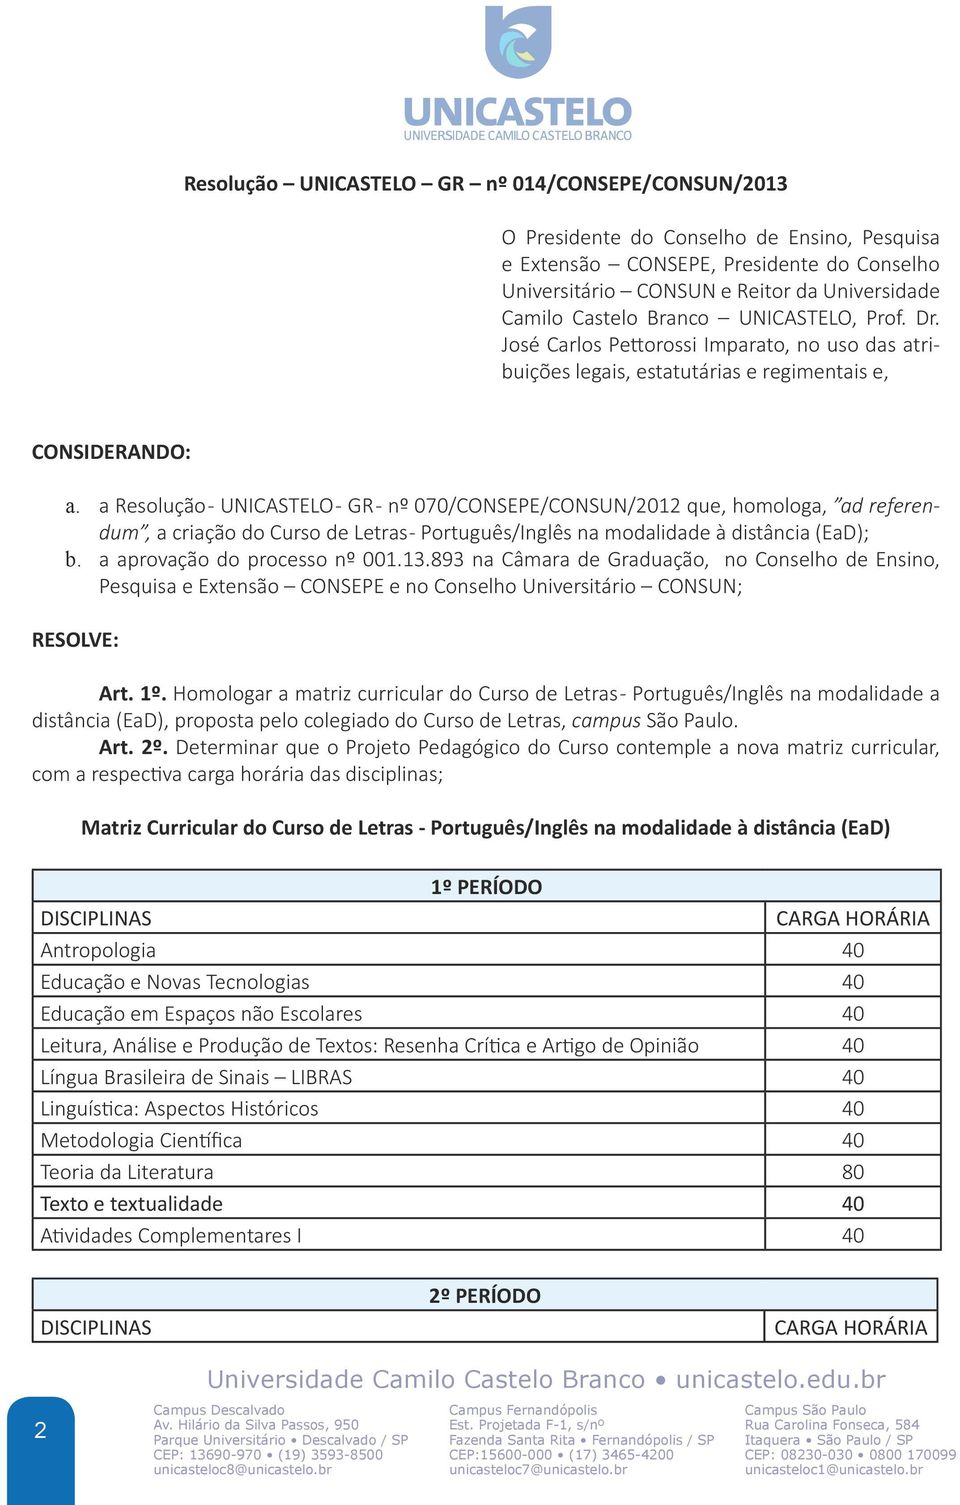 a Resolução - UNICASTELO - GR - nº 070/CONSEPE/CONSUN/2012 que, homologa, ad referendum, a criação do Curso de Letras - Português/Inglês na modalidade à distância (EaD); b.